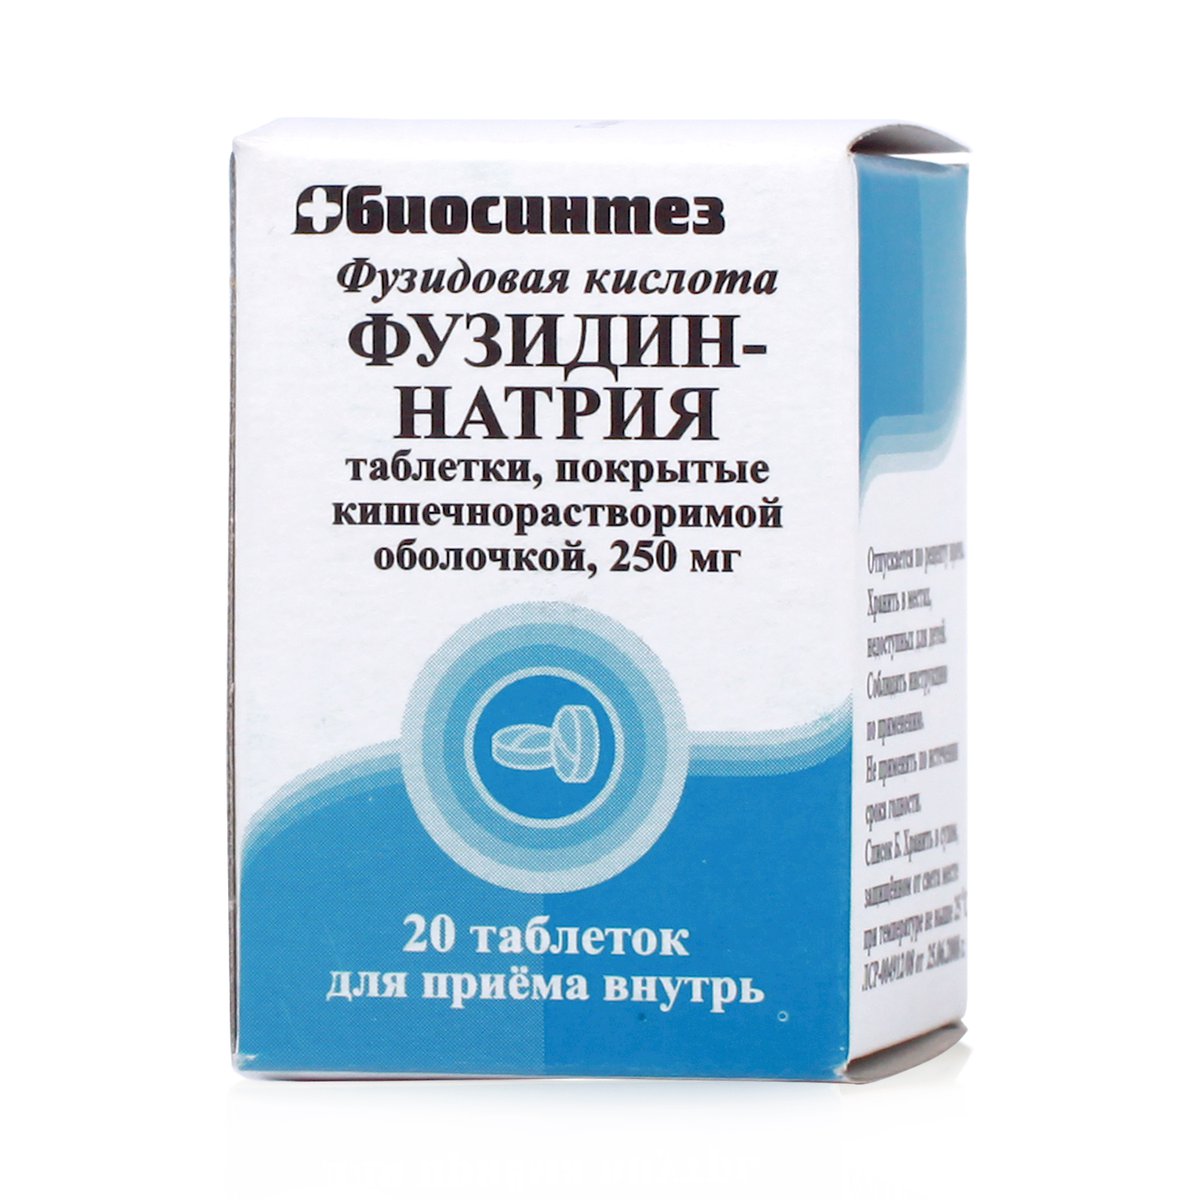 Фузидин-натрия (таблетки, 20 шт, 250 мг) - цена,  онлайн  .